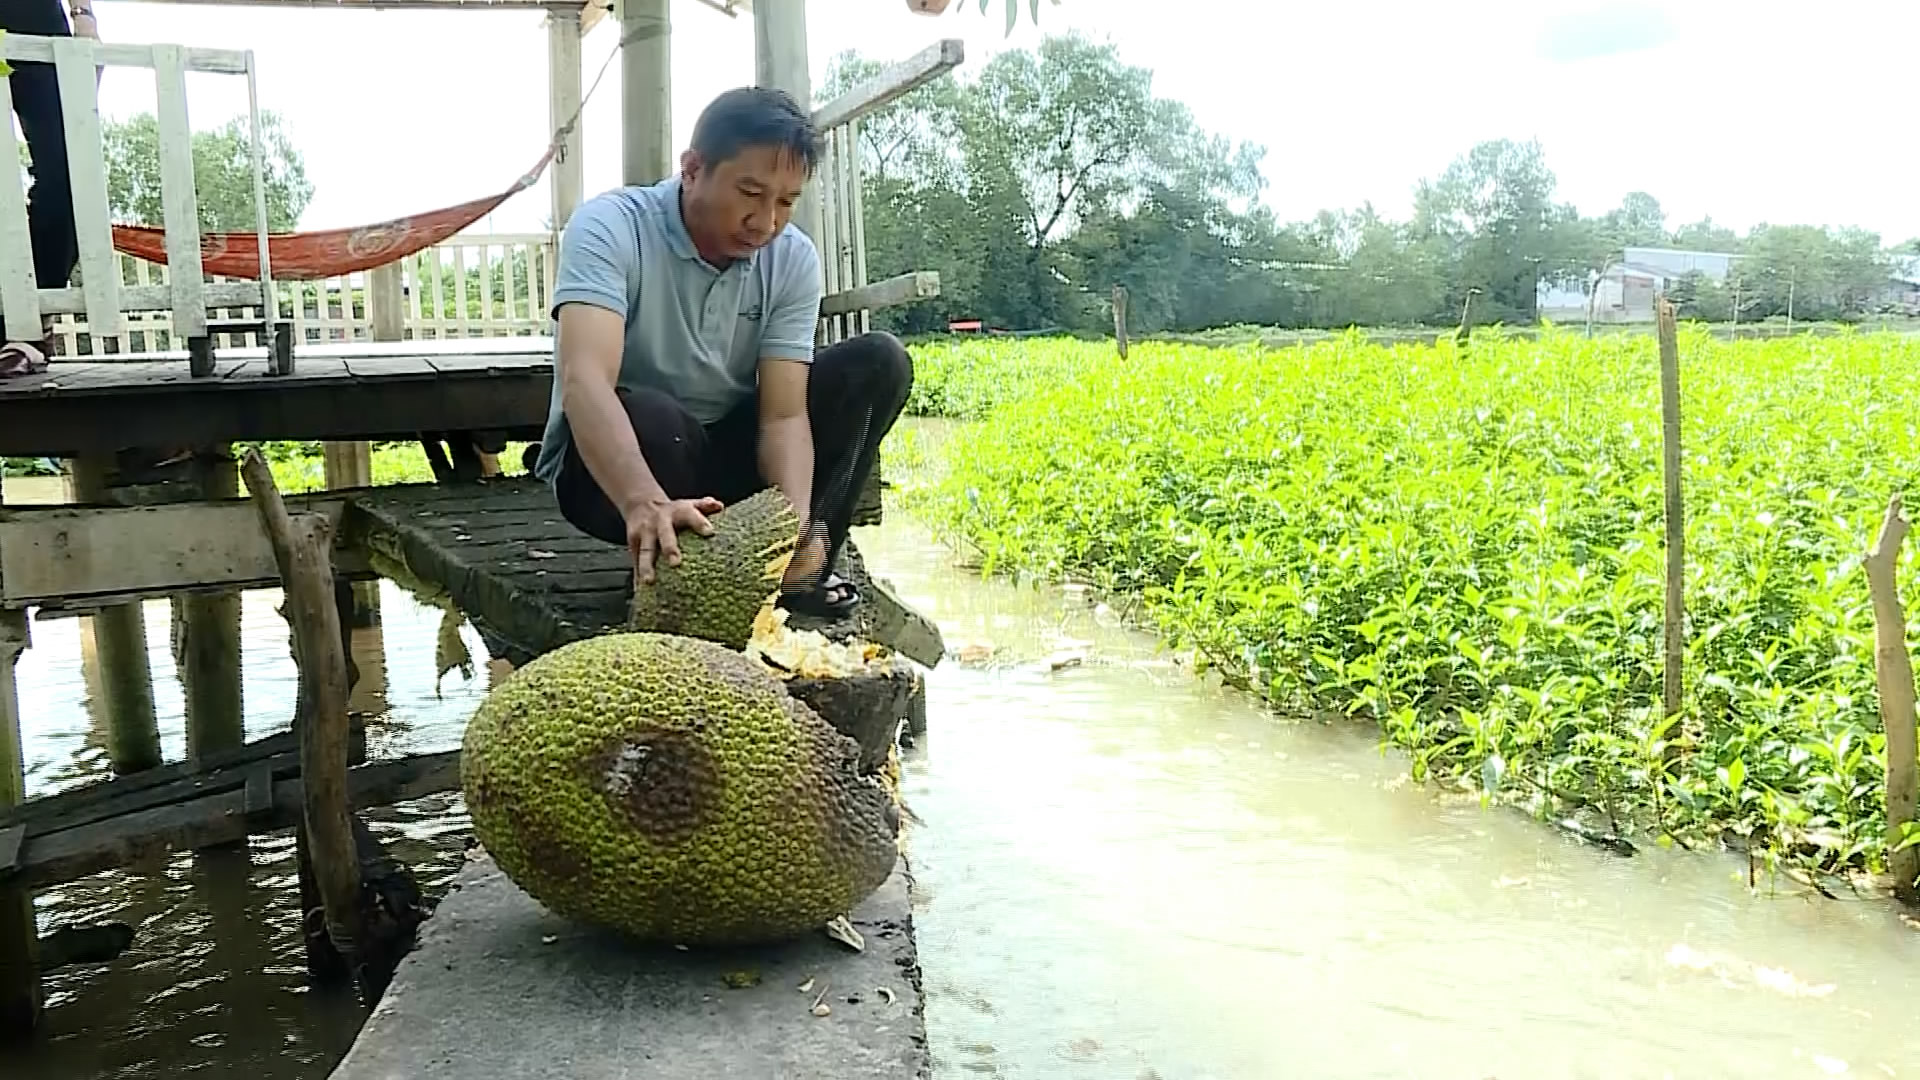 Một nông dân Vĩnh Long bằm hàng tạ trái mít Thái cho đàn cá sông ăn, ước chừng 5-6 tấn cá tự nhiên - Ảnh 1.